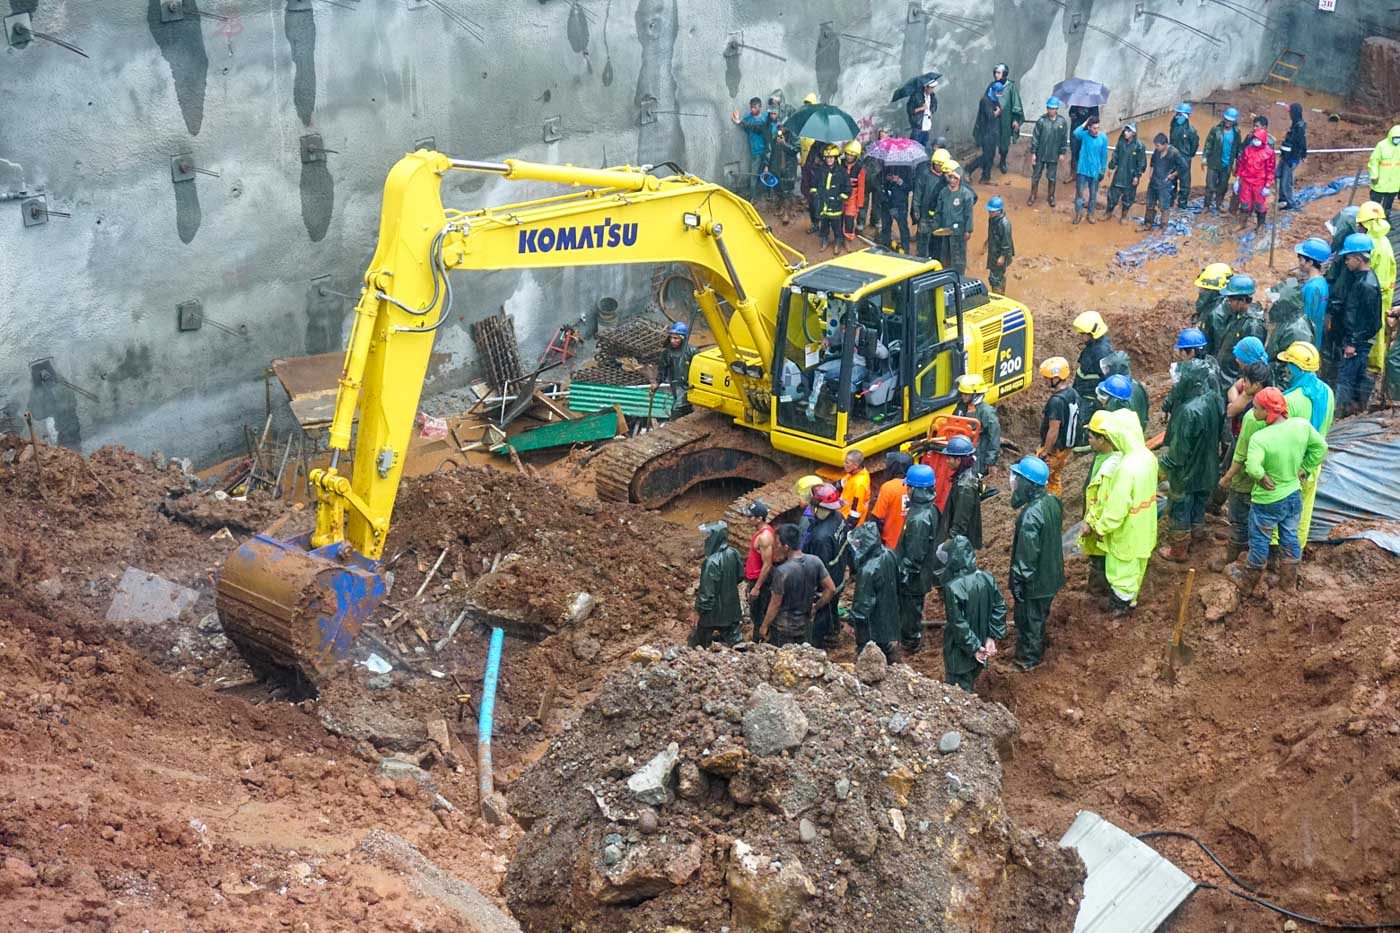 2 killed in mudslide at Baguio condominium construction site